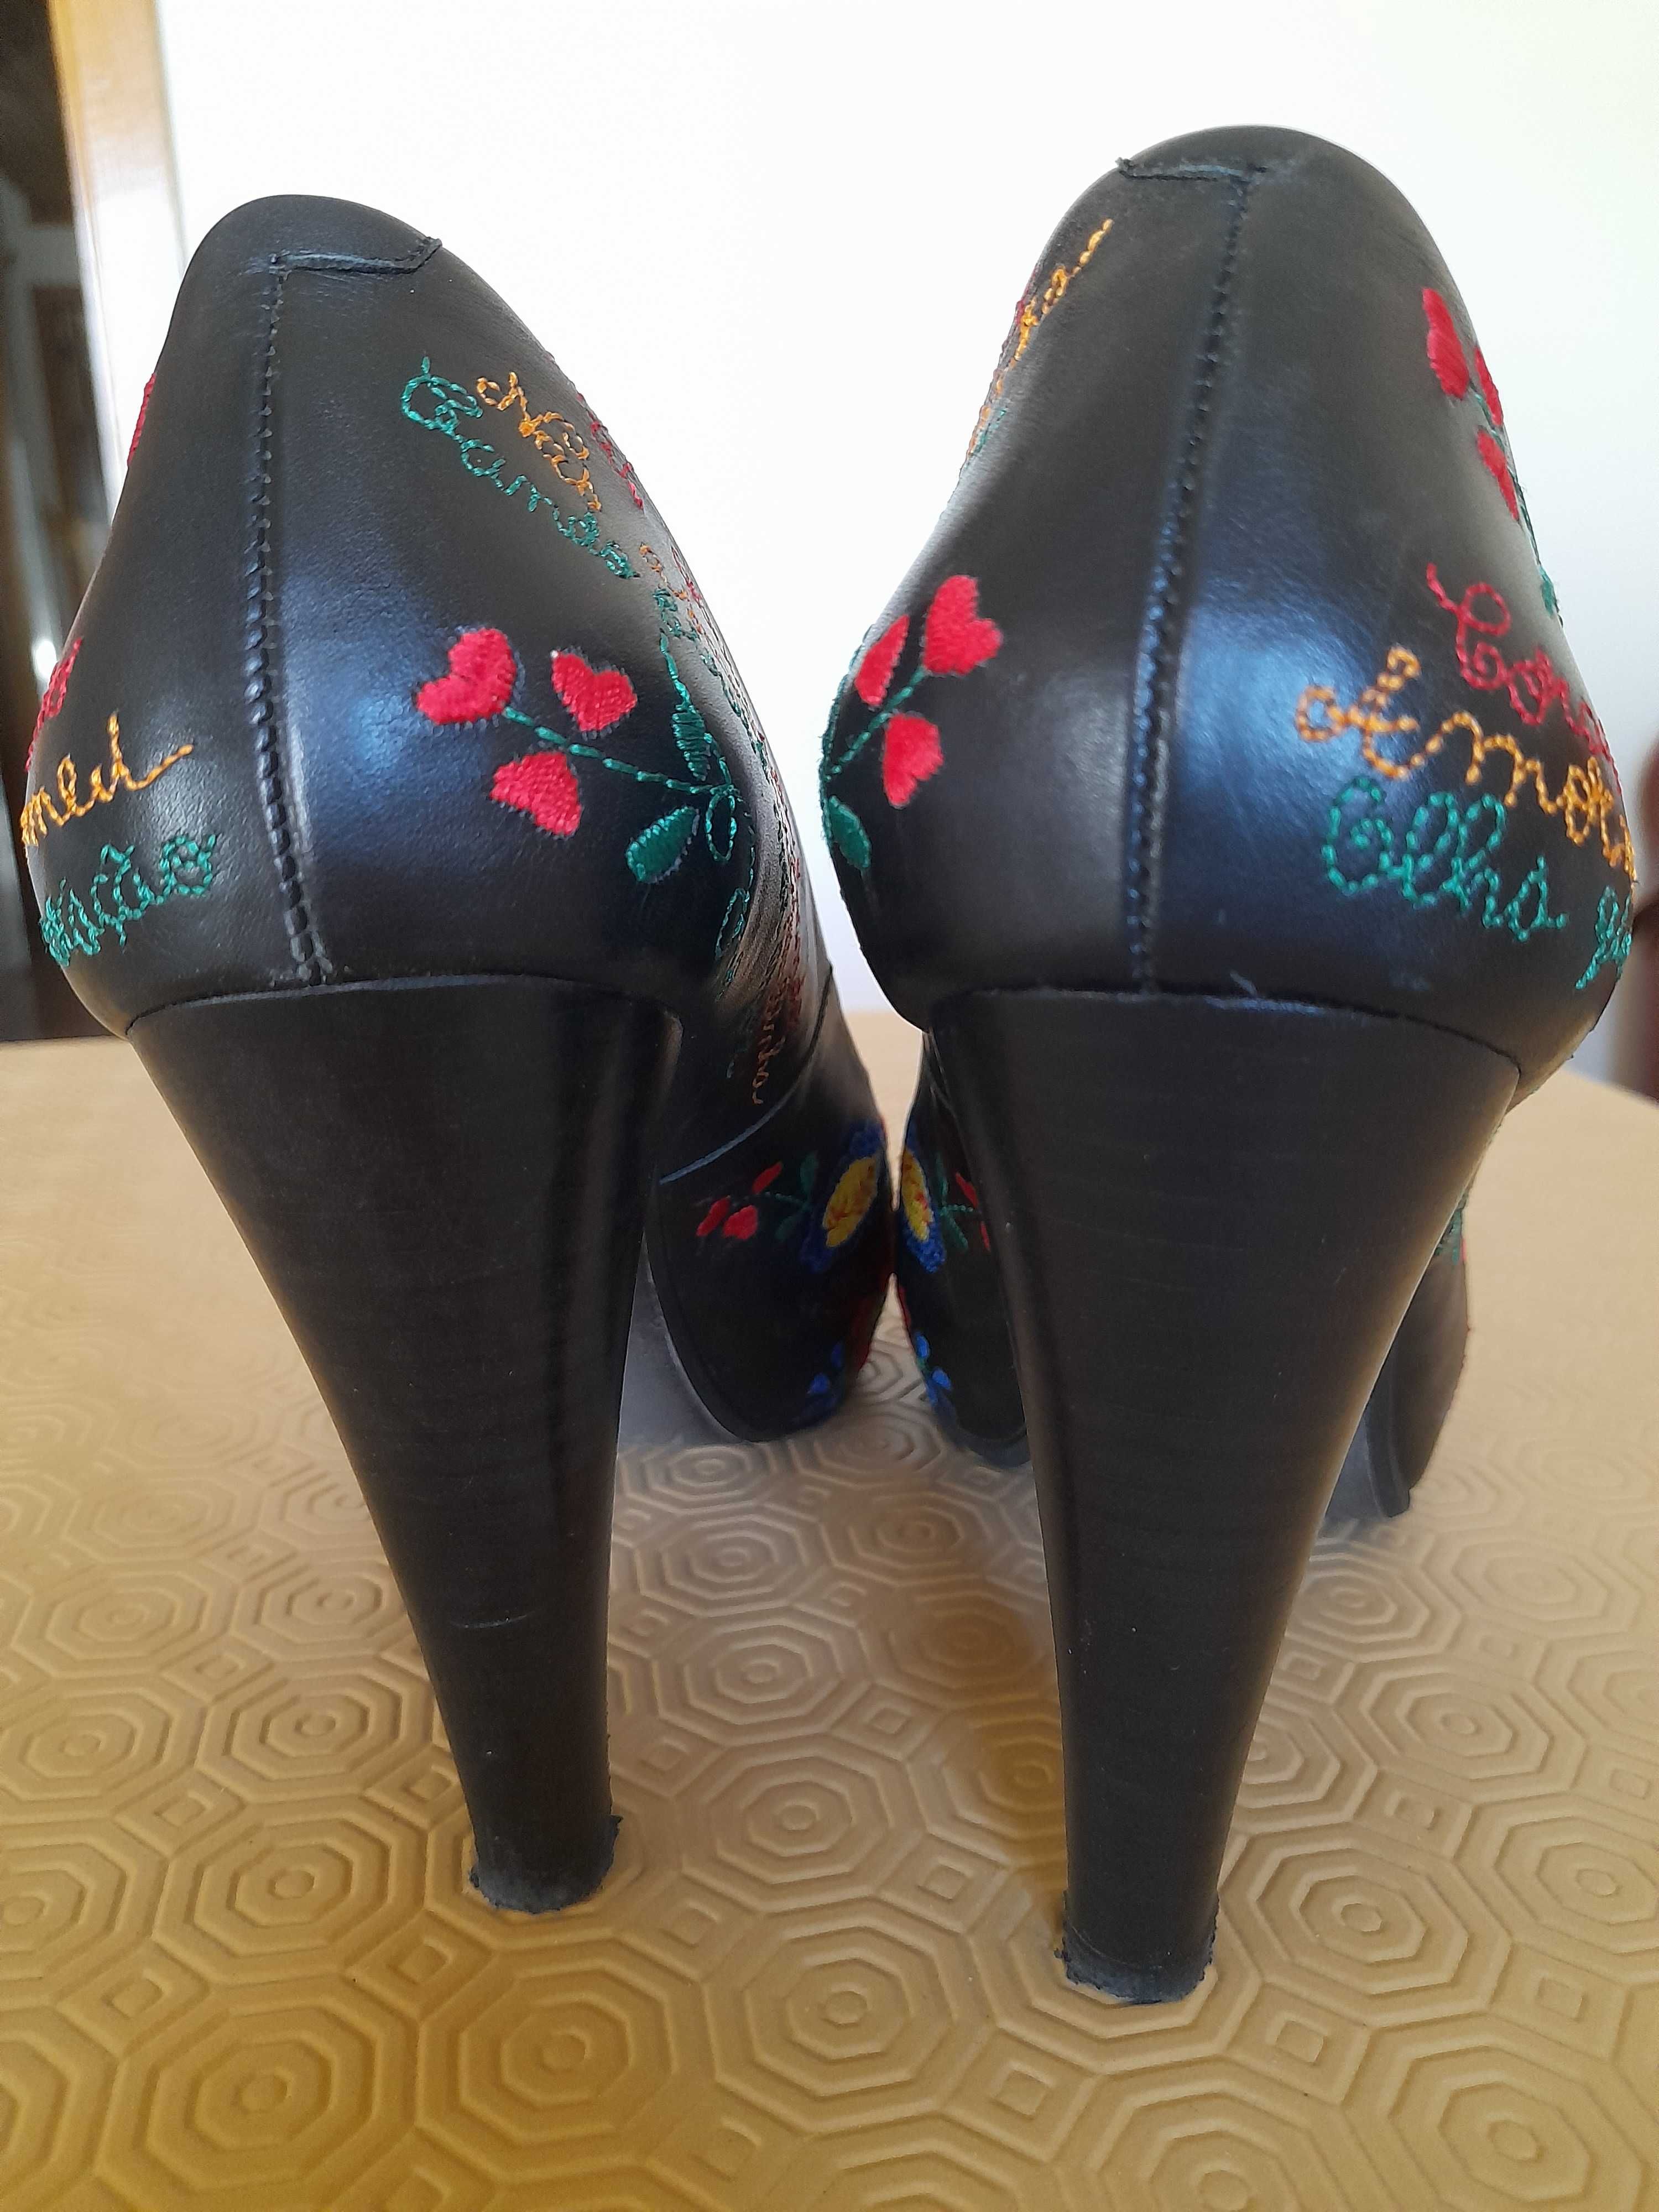 Sapatos Namorarte, Namorar Portugal,  Lencos dos Namorados, tamanho 38